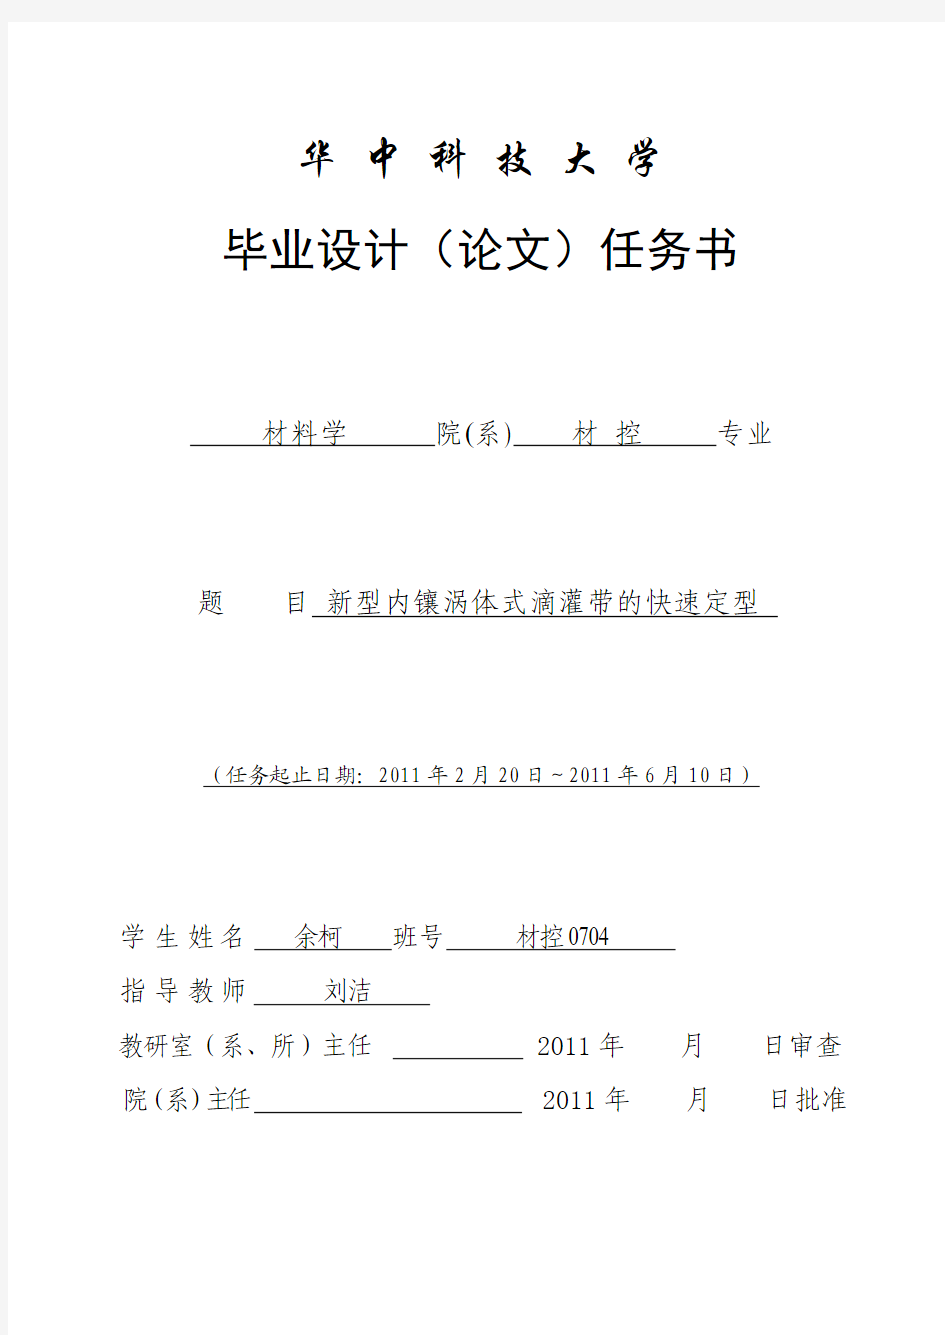 华中科技大学毕业设计(论文)任务书